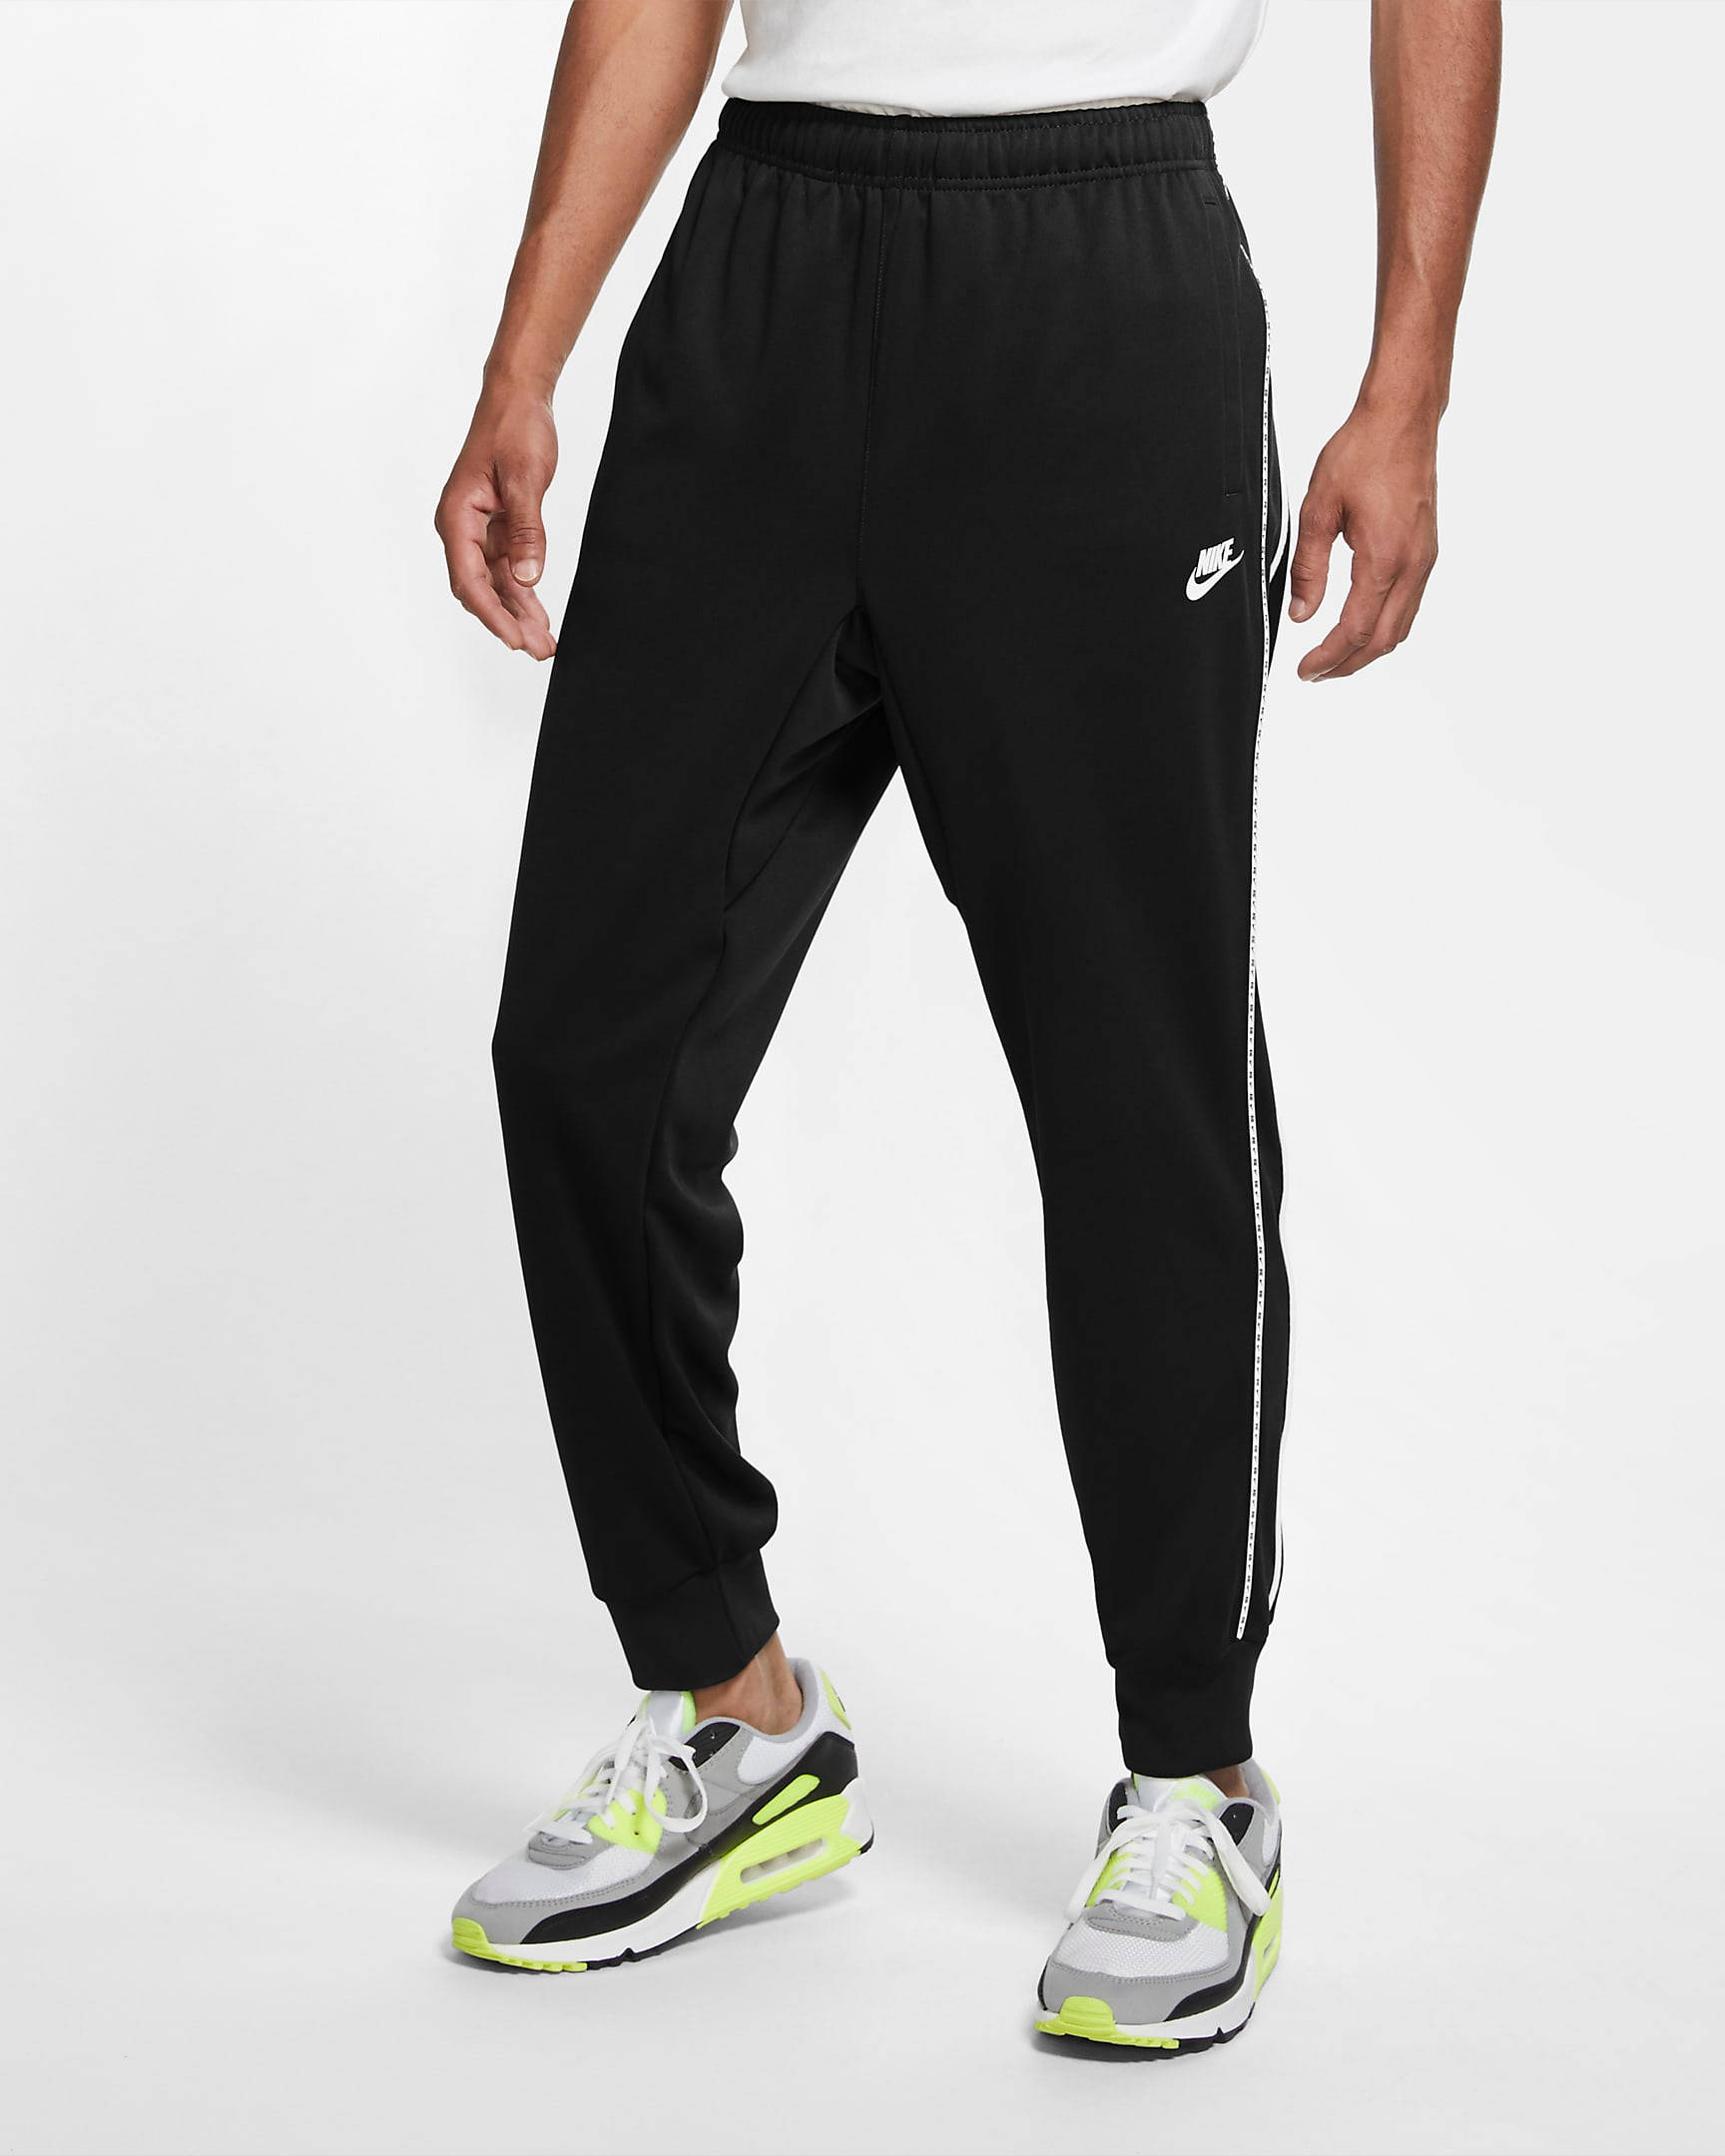 Nike Sportswear Joggers - Black | The Sole Supplier